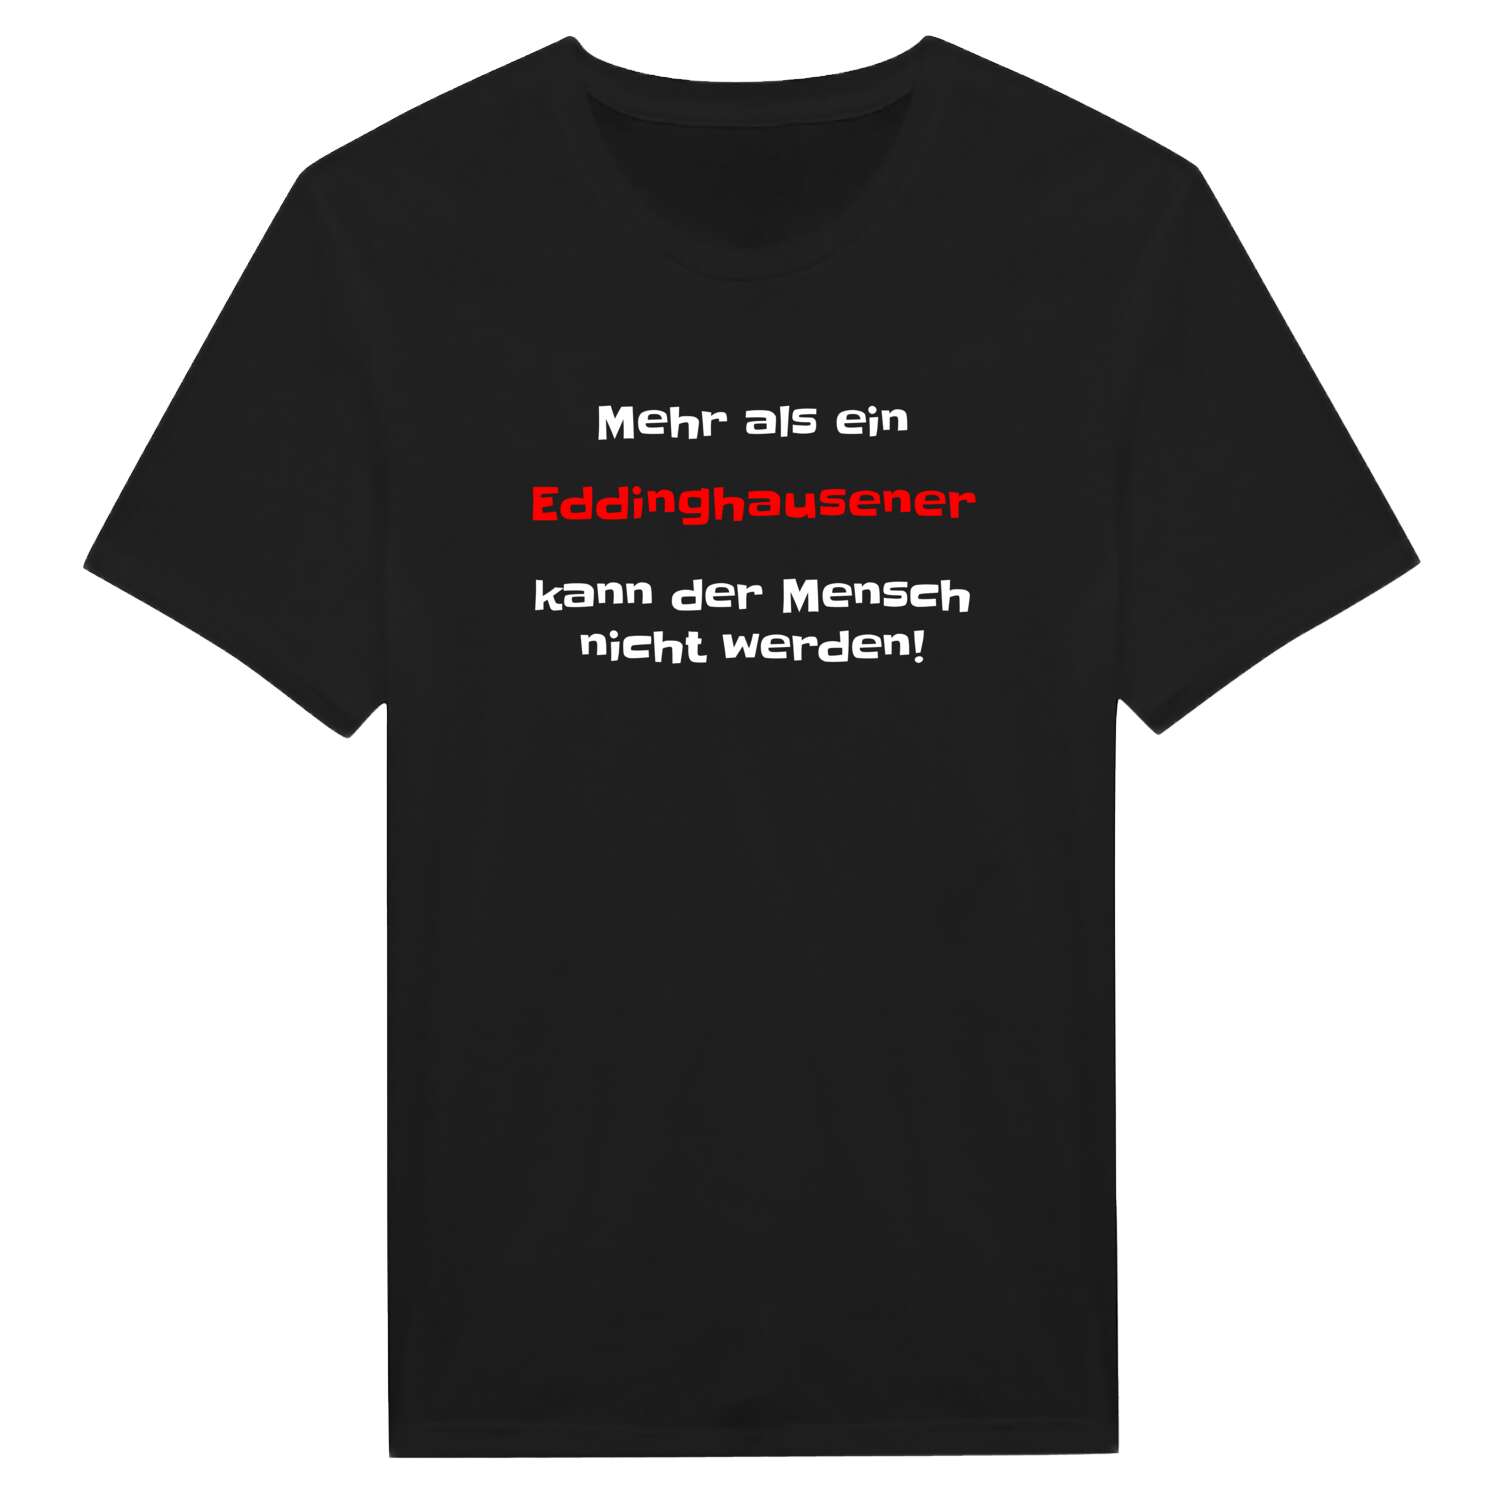 Eddinghausen T-Shirt »Mehr als ein«